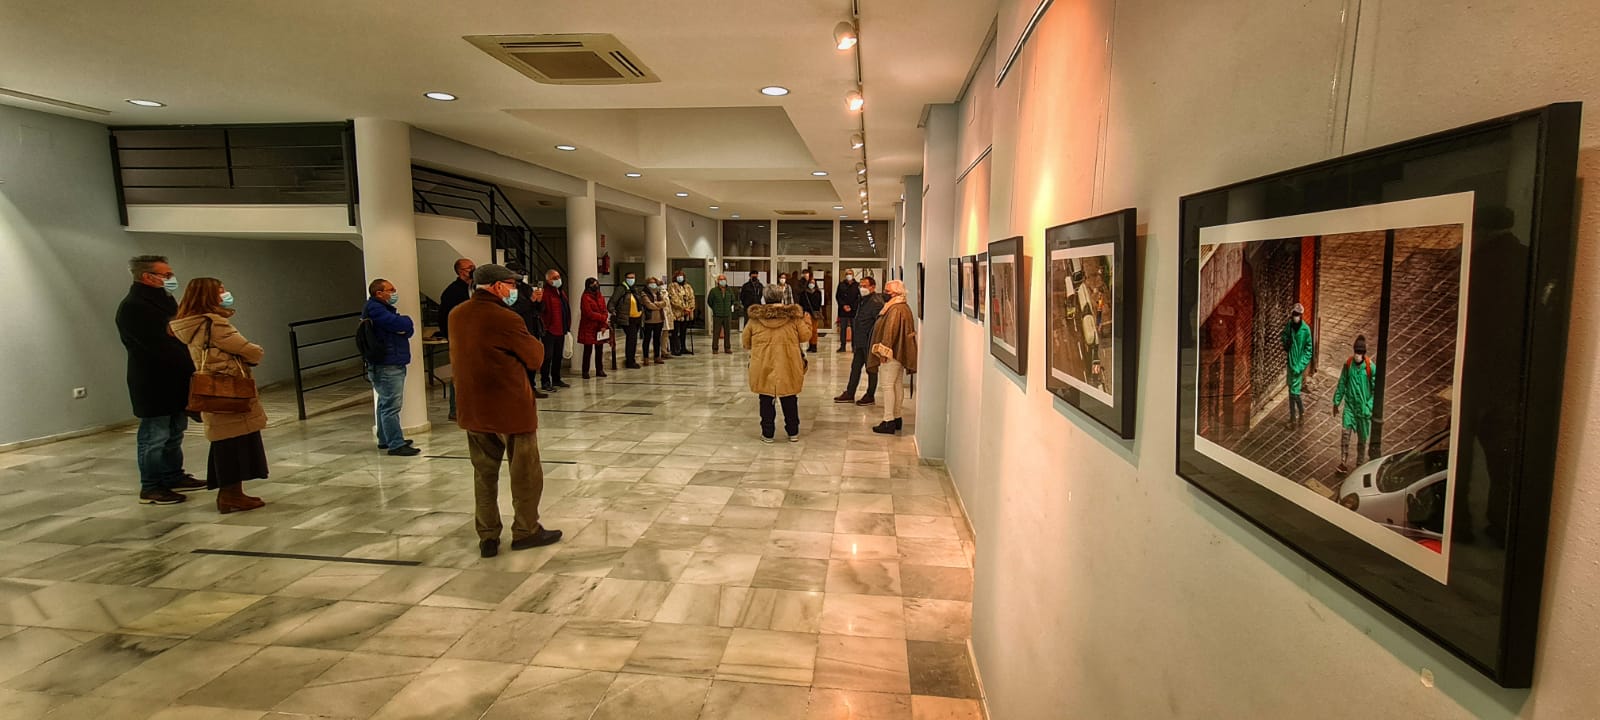 El CMC Paulo Freire de Almenara acoge la exposición fotográfica “45 DÍAS” de Isabel Ahijado